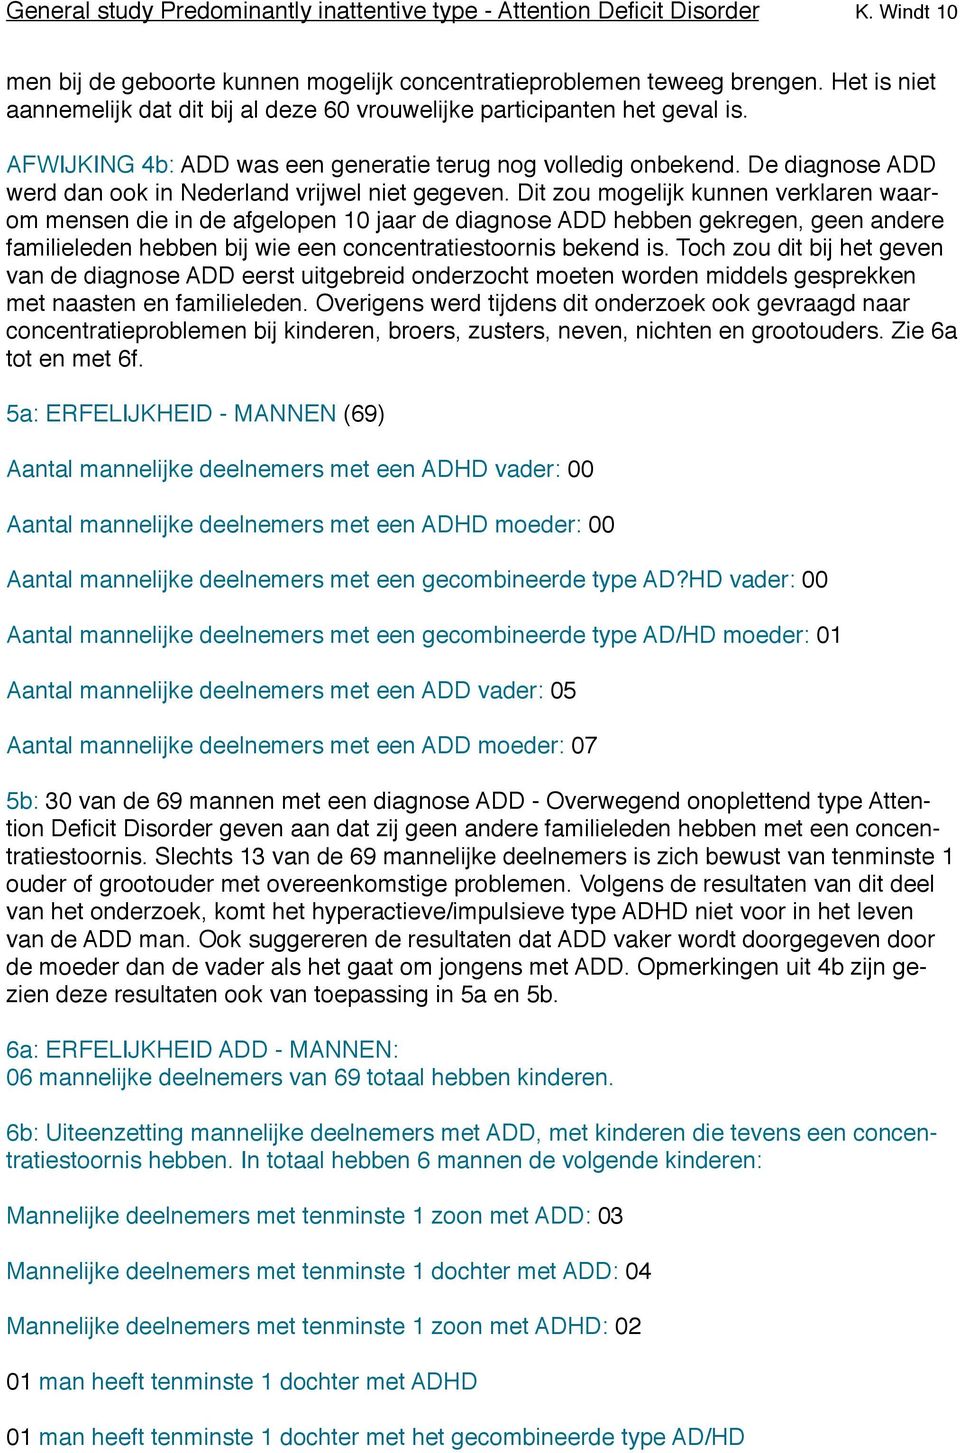 De diagnose ADD werd dan ook in Nederland vrijwel niet gegeven.